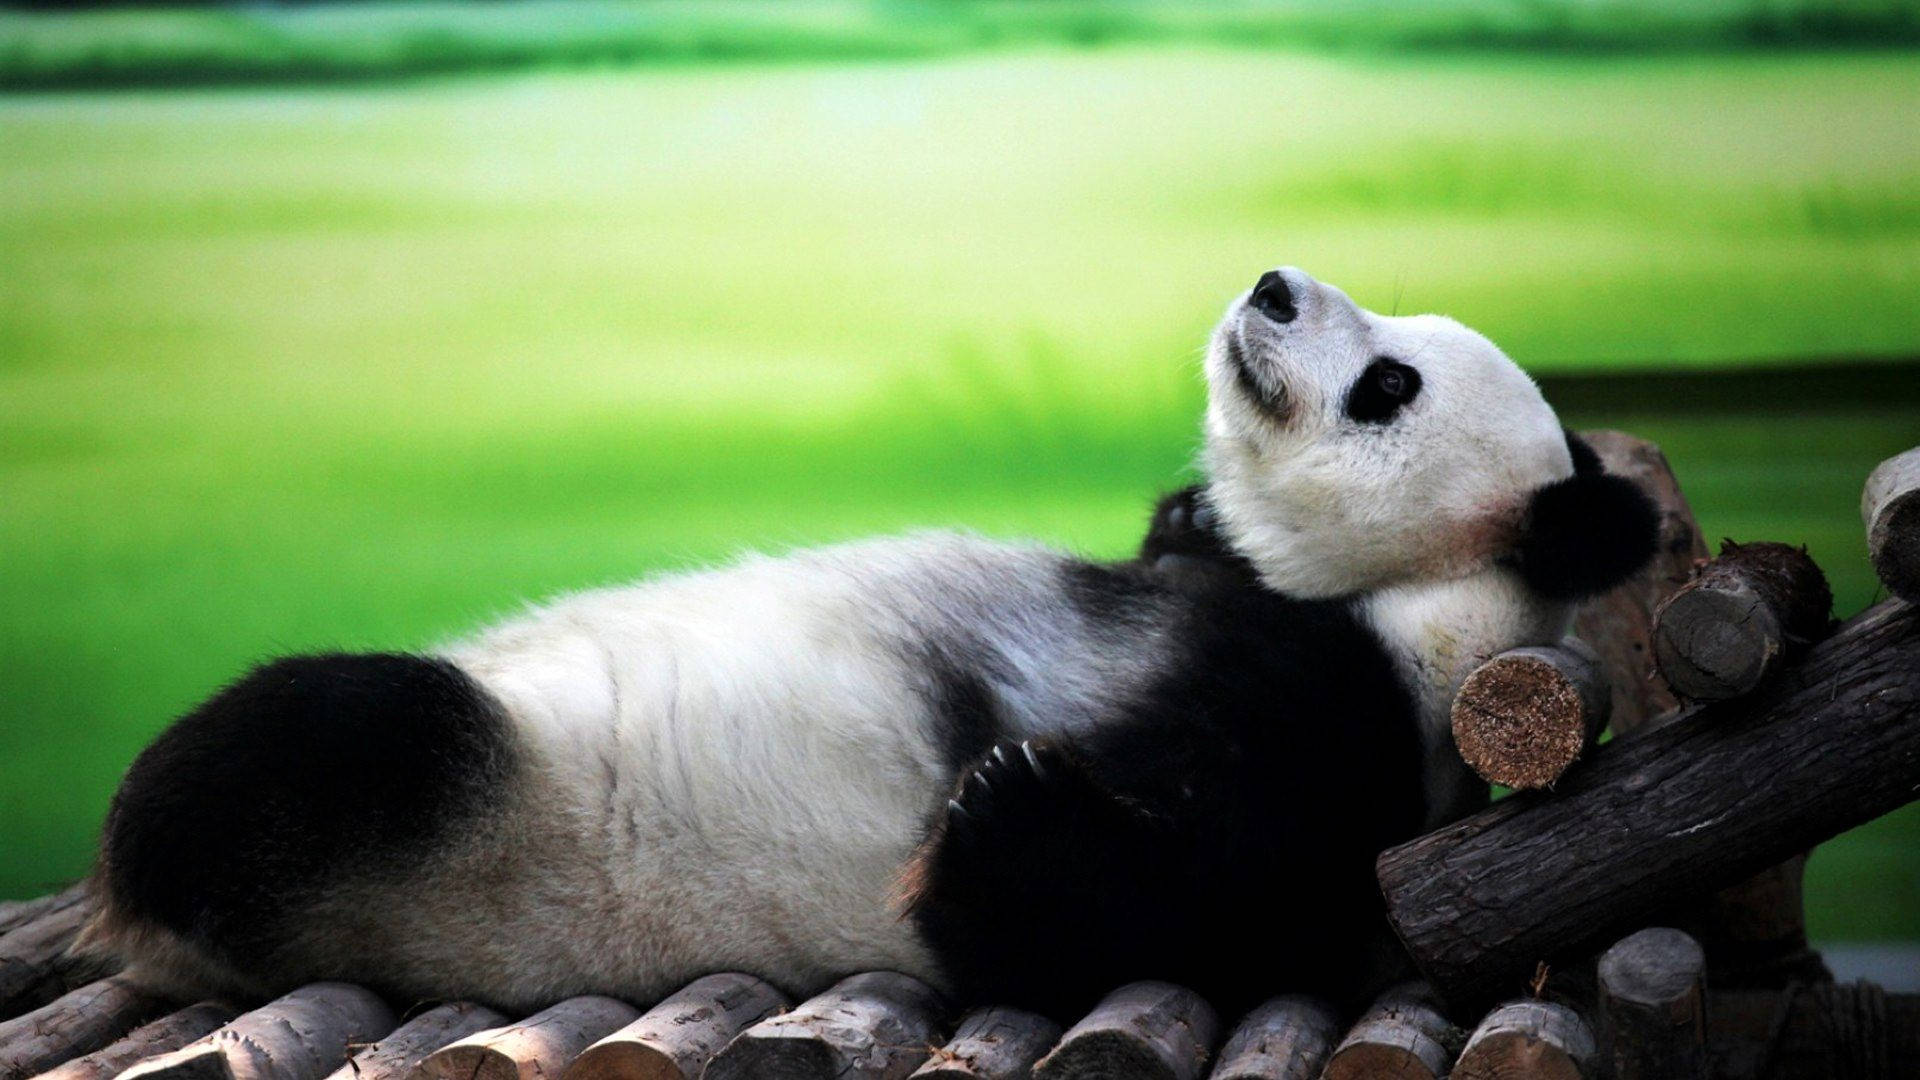 Cute Panda Relaxing Background